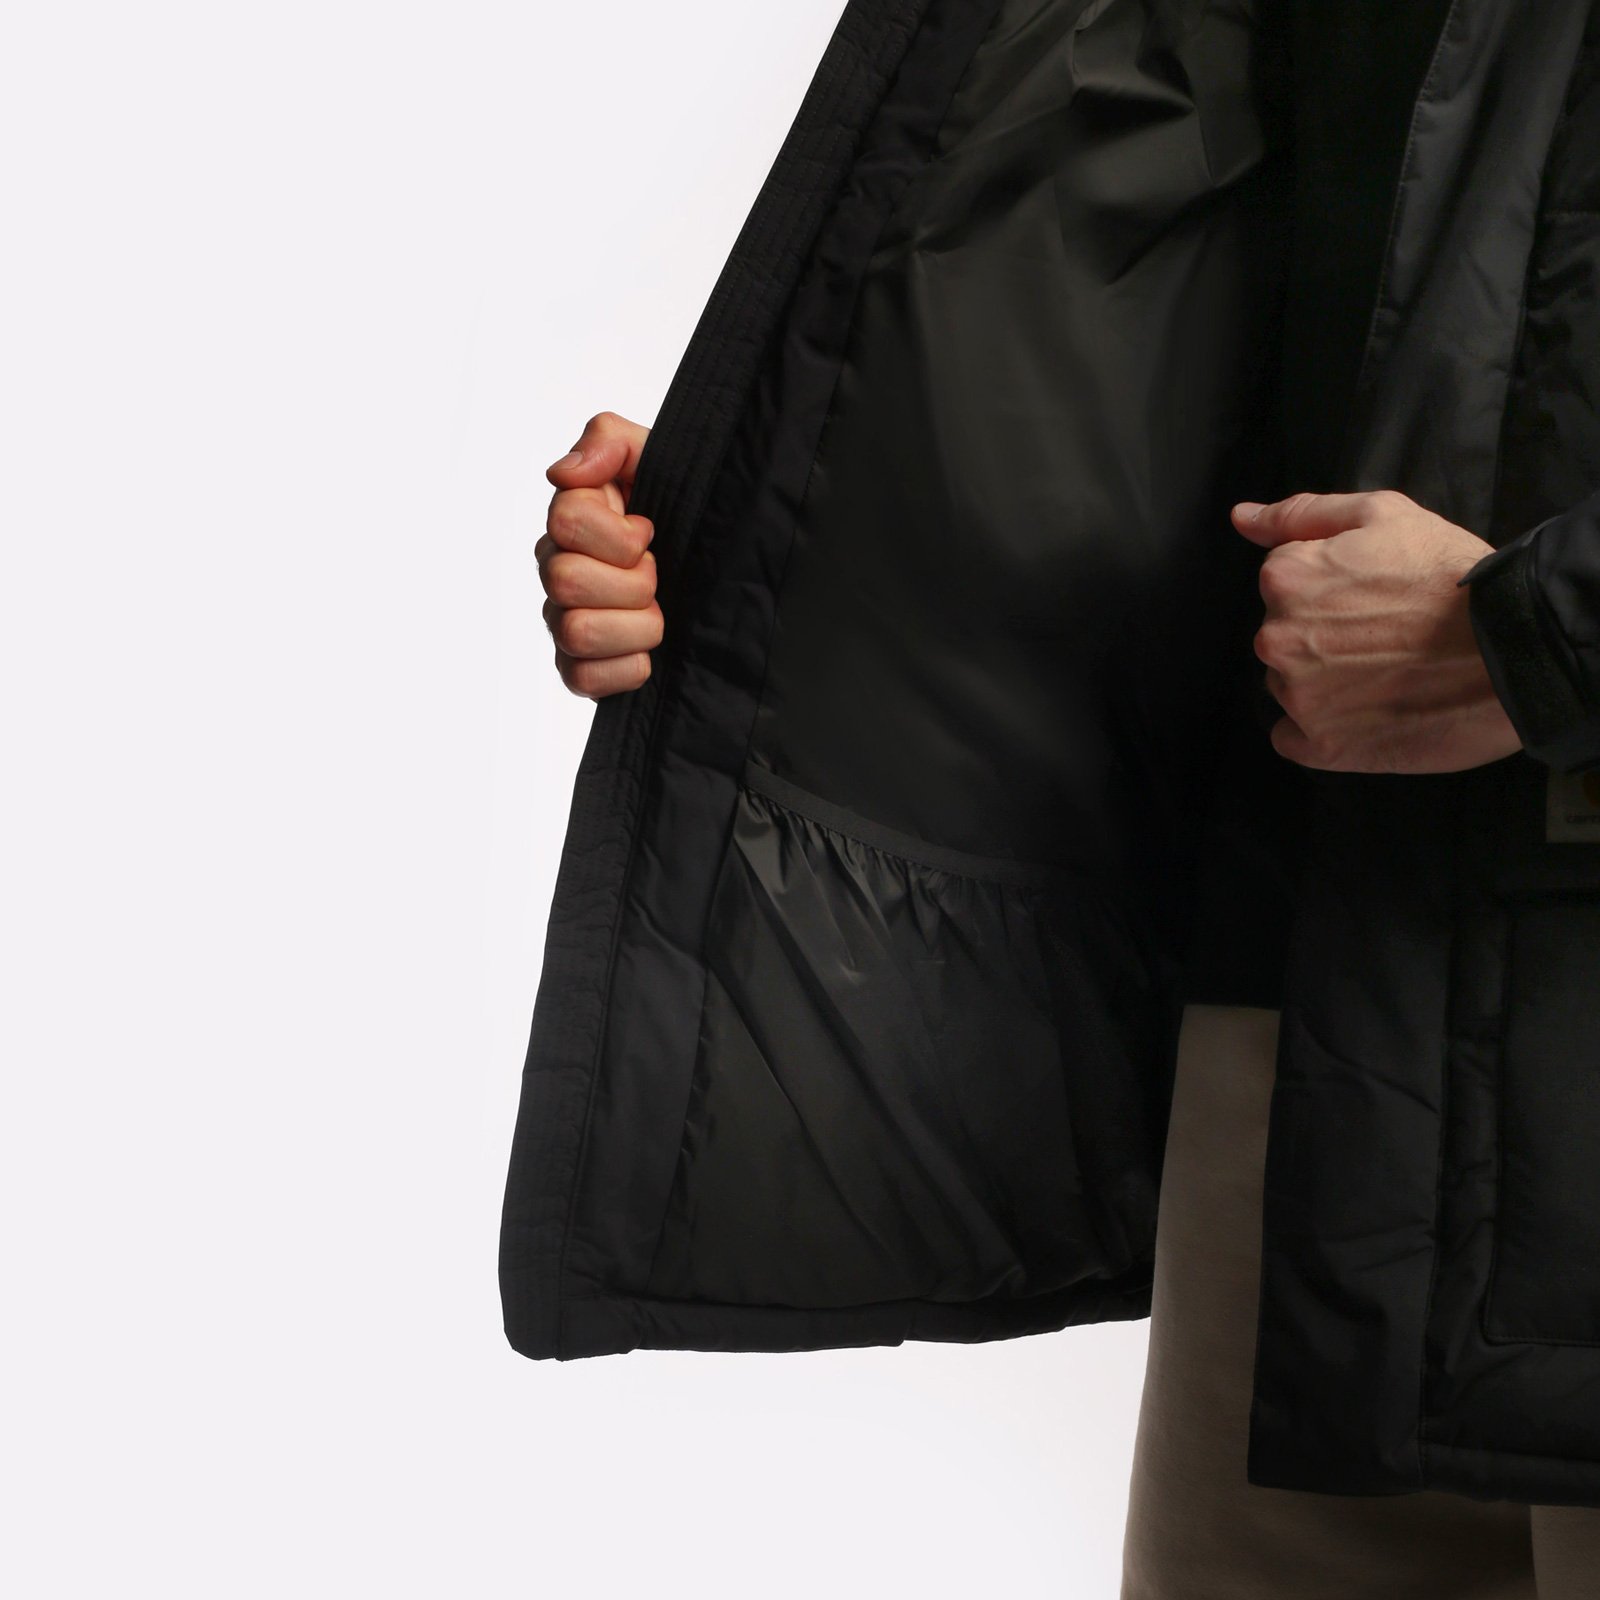 мужская куртка Carhartt WIP Milter Jacket  (I032267-black) I032267-black - цена, описание, фото 6